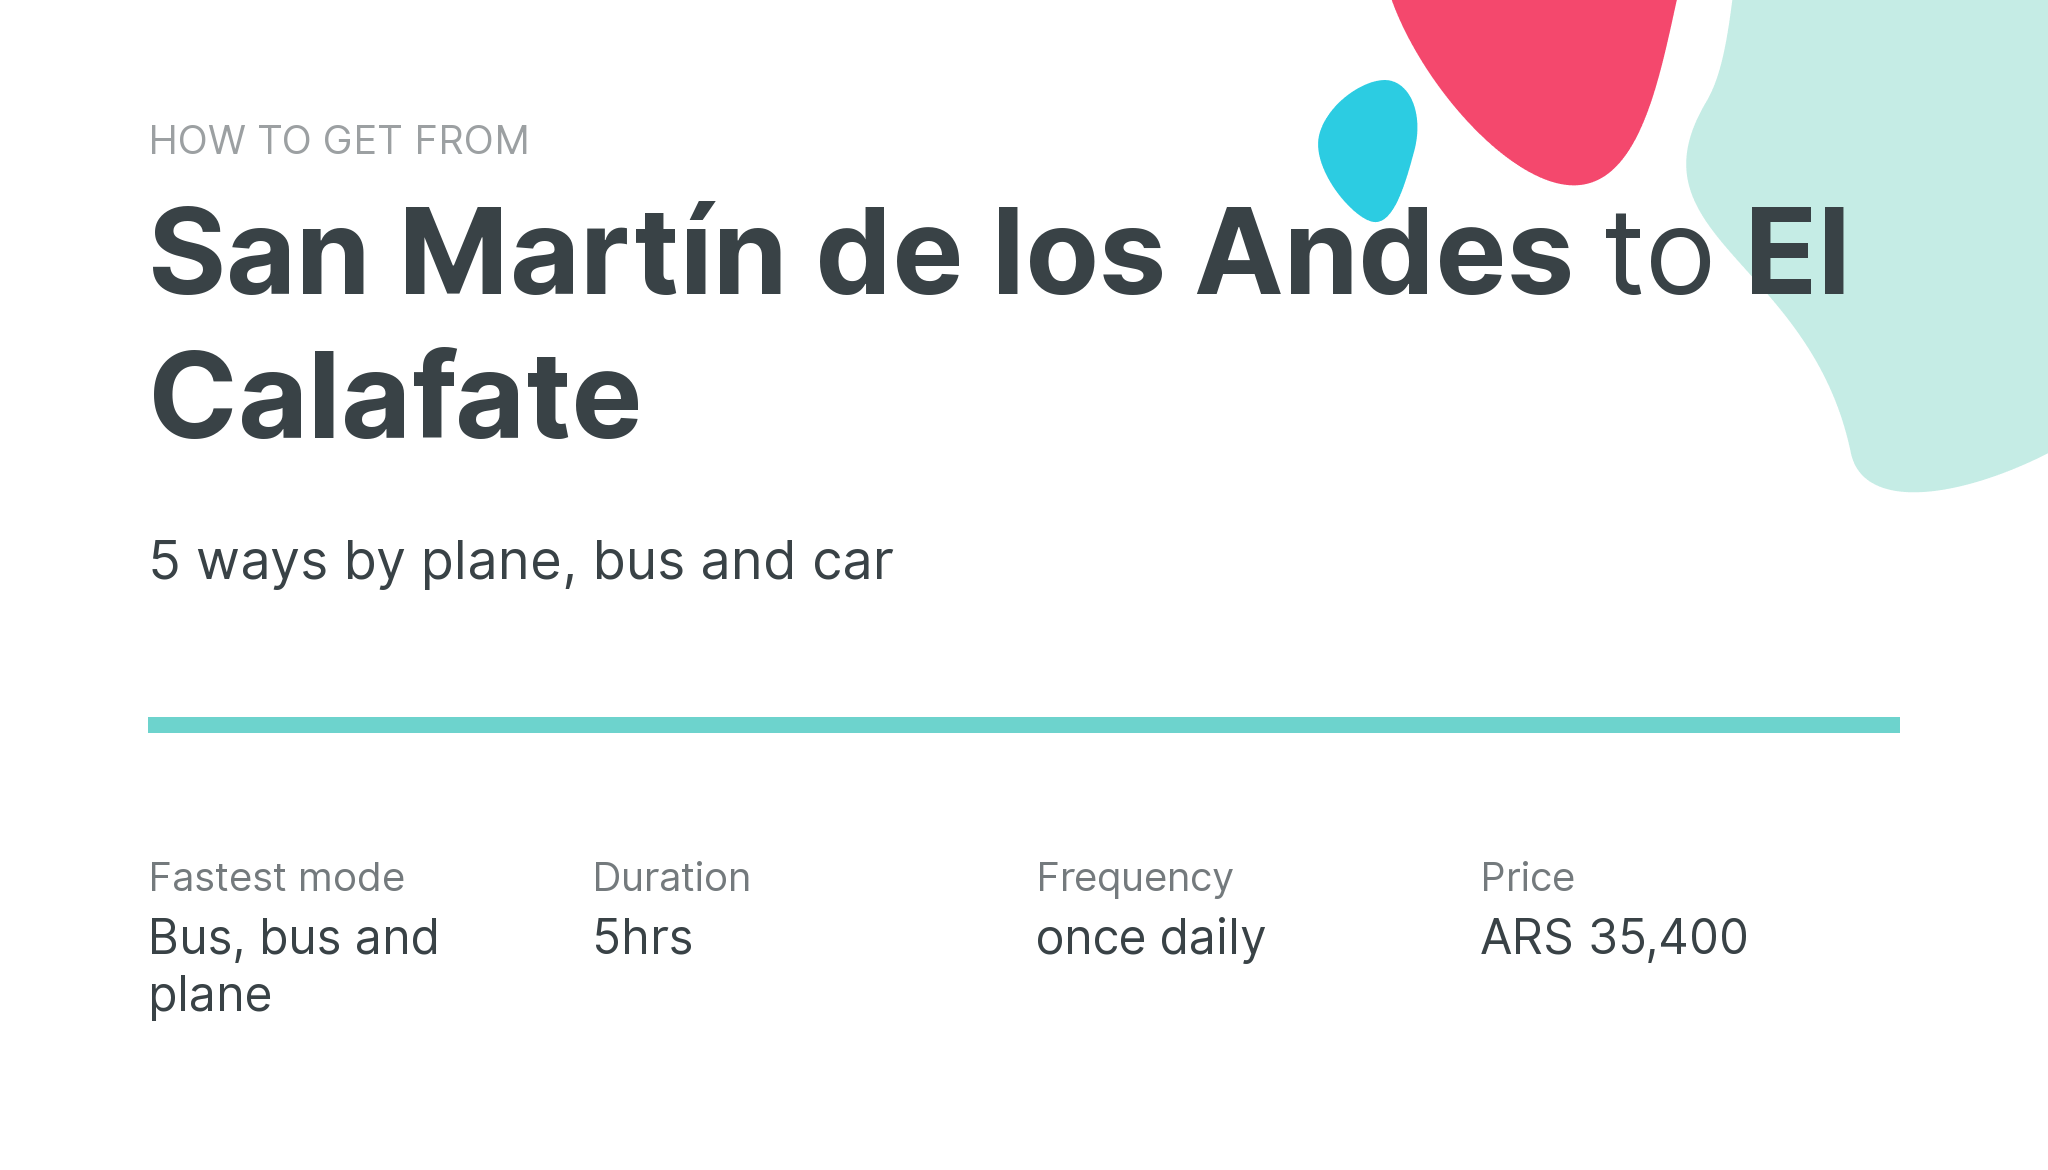 How do I get from San Martín de los Andes to El Calafate